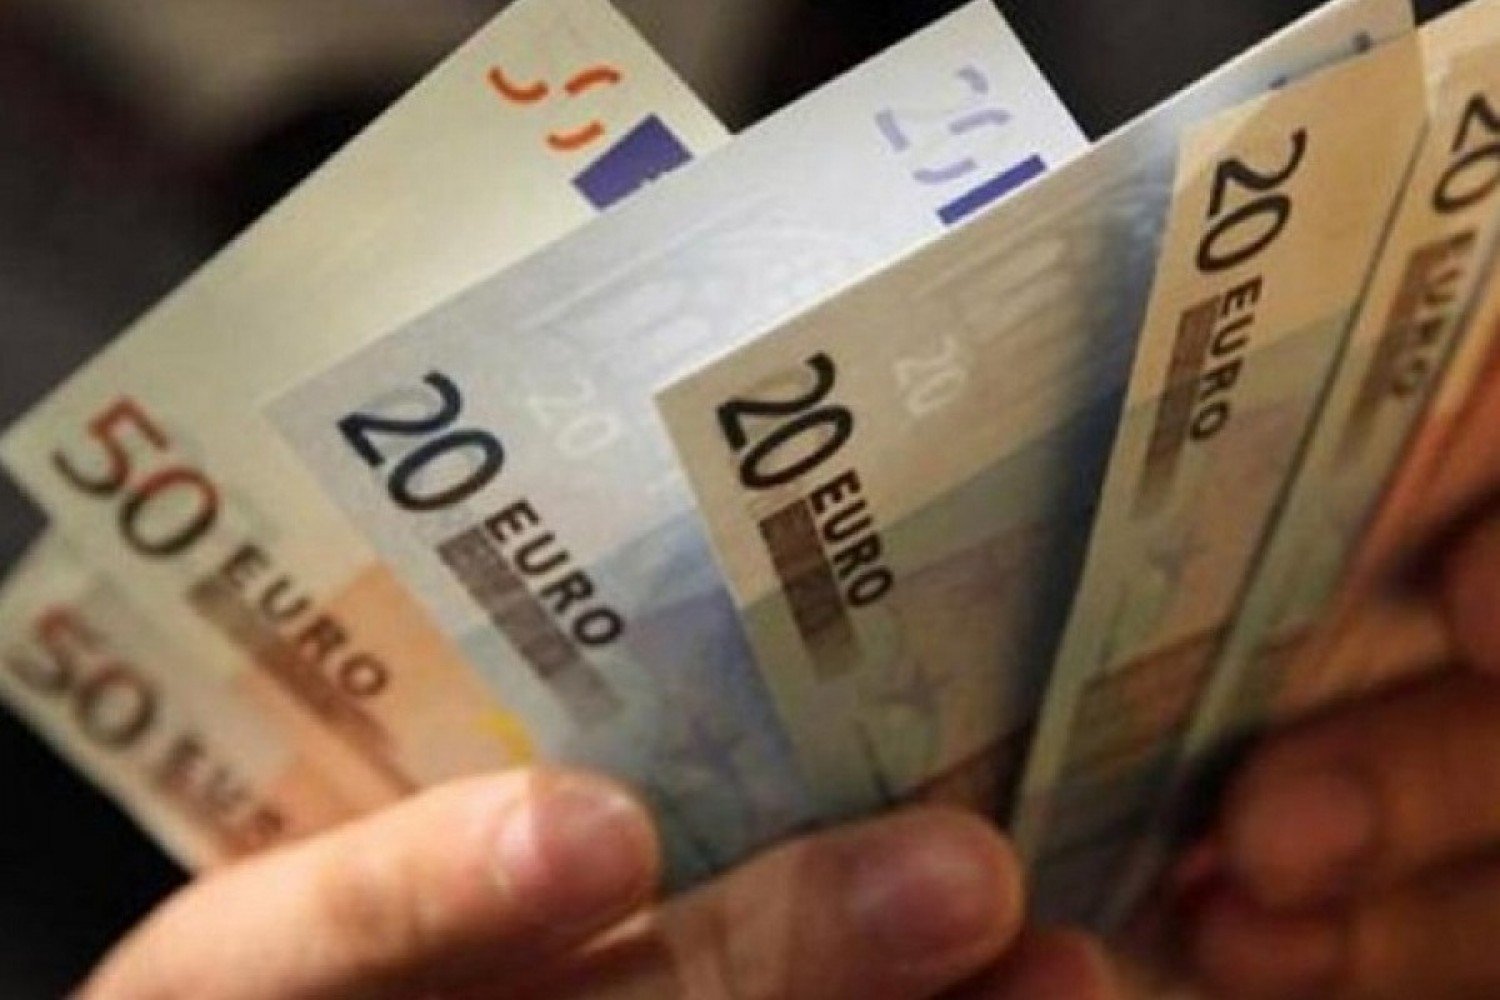 Τρίκαλα: Σπείρα Βούλγαρων κάνει αγορές με πλαστά χαρτονομίσματα – Τους αναζητούν οι αρχές